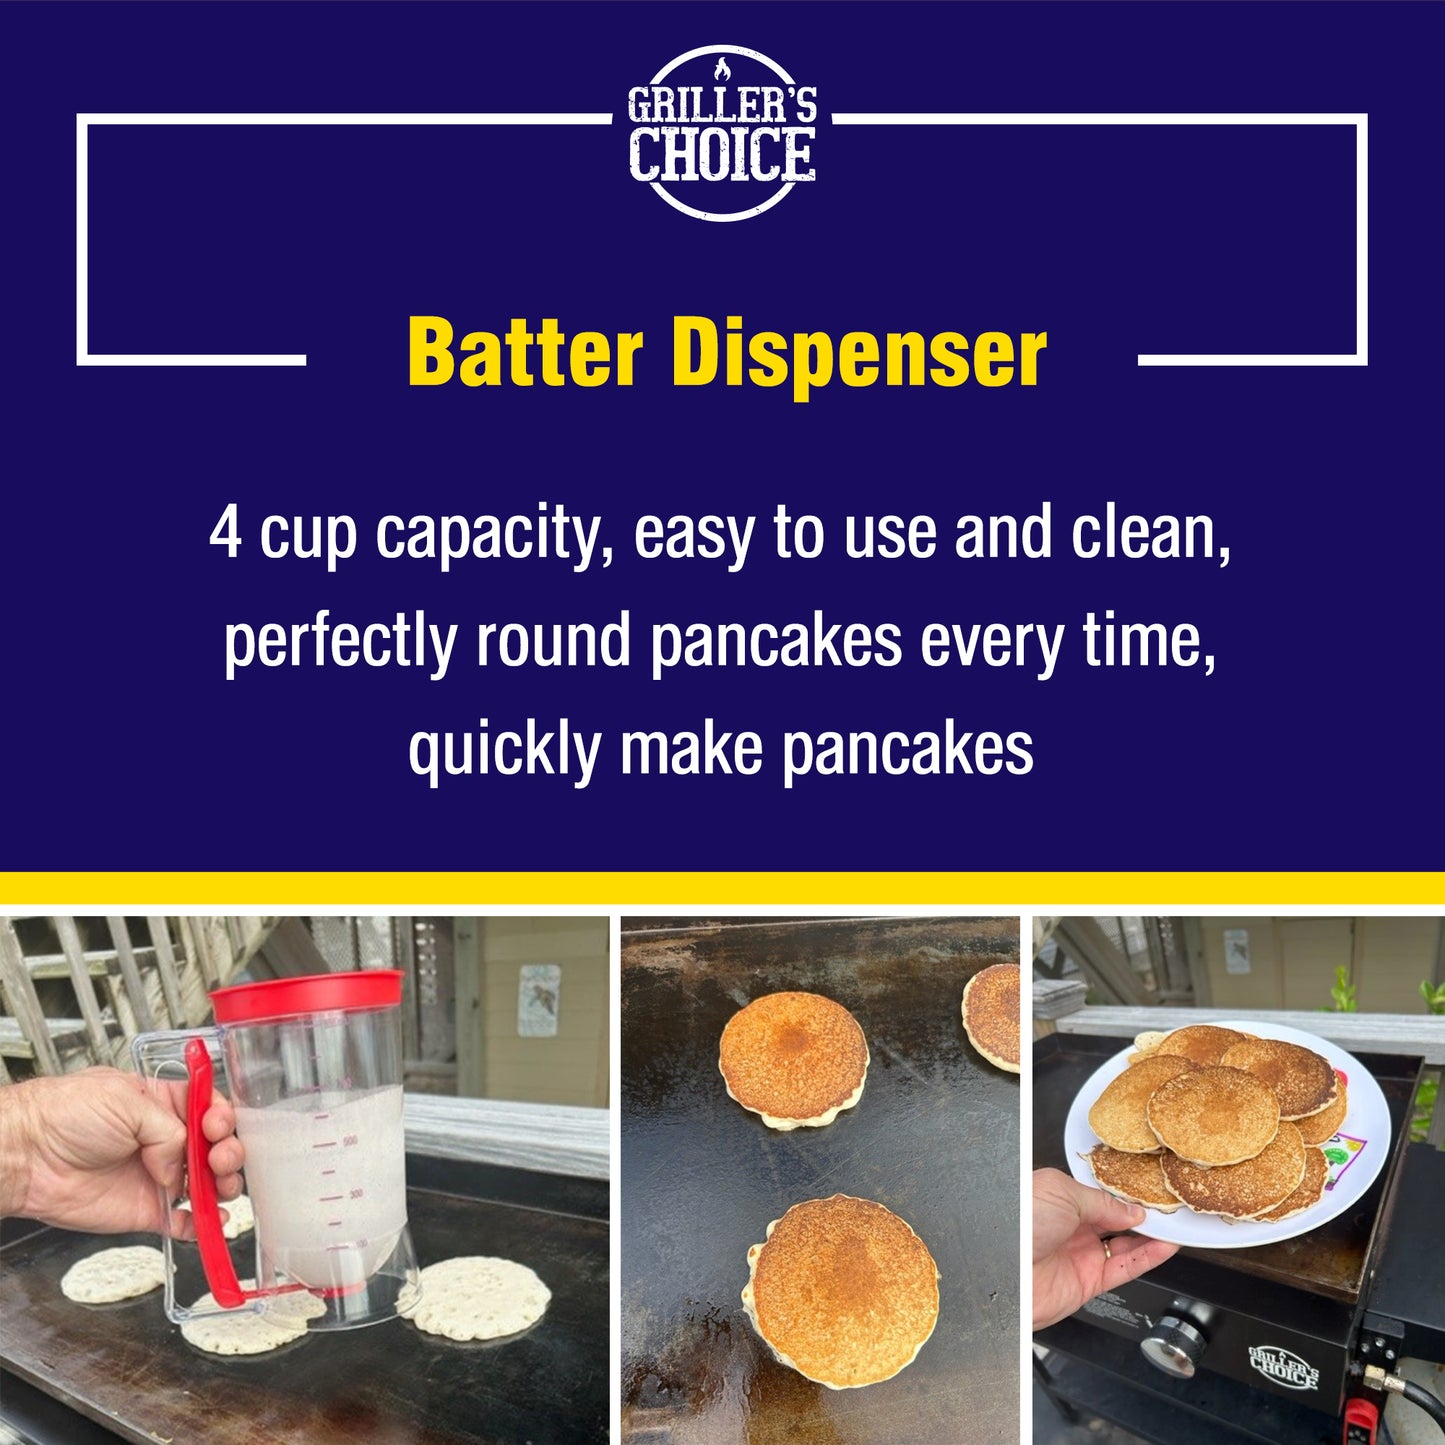 Griller's Choice Griddle Breakfast Kit - Pancake Batter Dispenser, Bacon Press, Egg Rings, Perfect for Family Morning Chefs, Cooks, and Pancake Lovers - Ultimate Pancake Breakfast Set